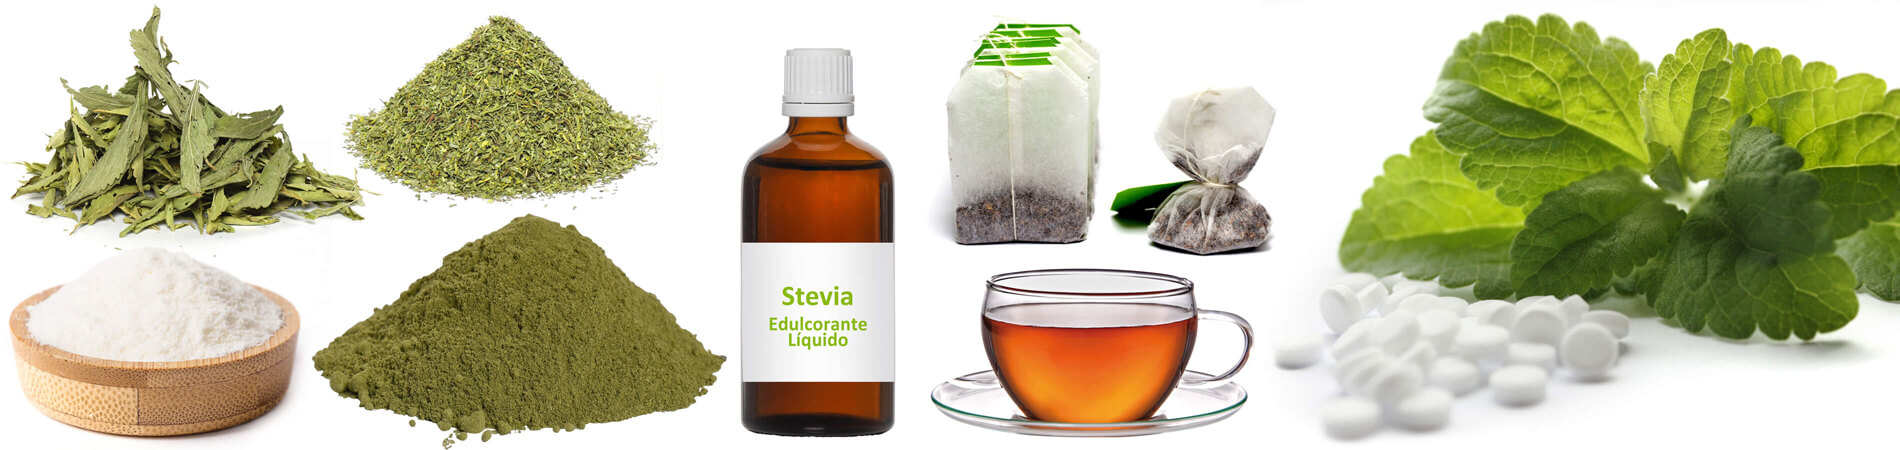 Cómo dosificar correctamente la Stevia | Guía de la...